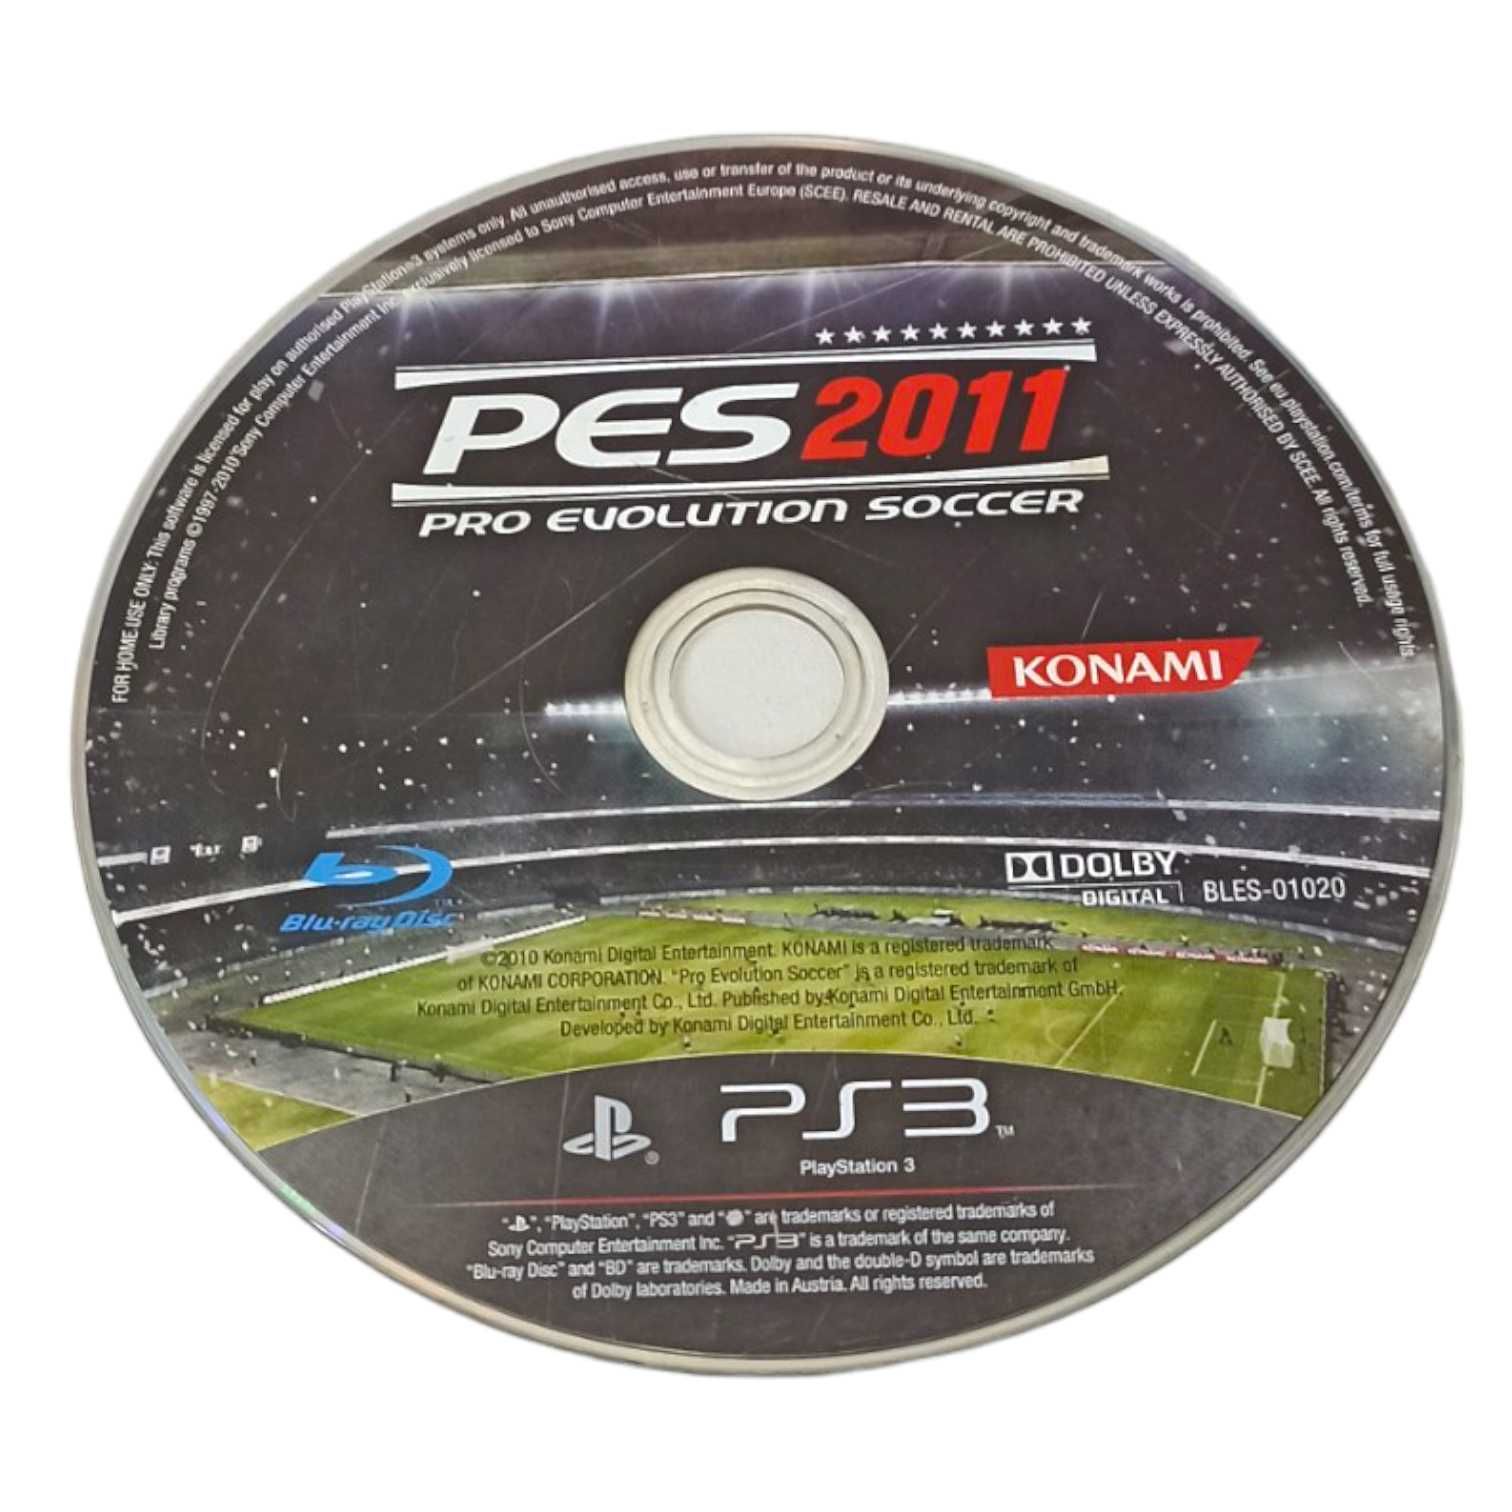 Pro Evolution Soccer 2011 - PES 2011 PS3